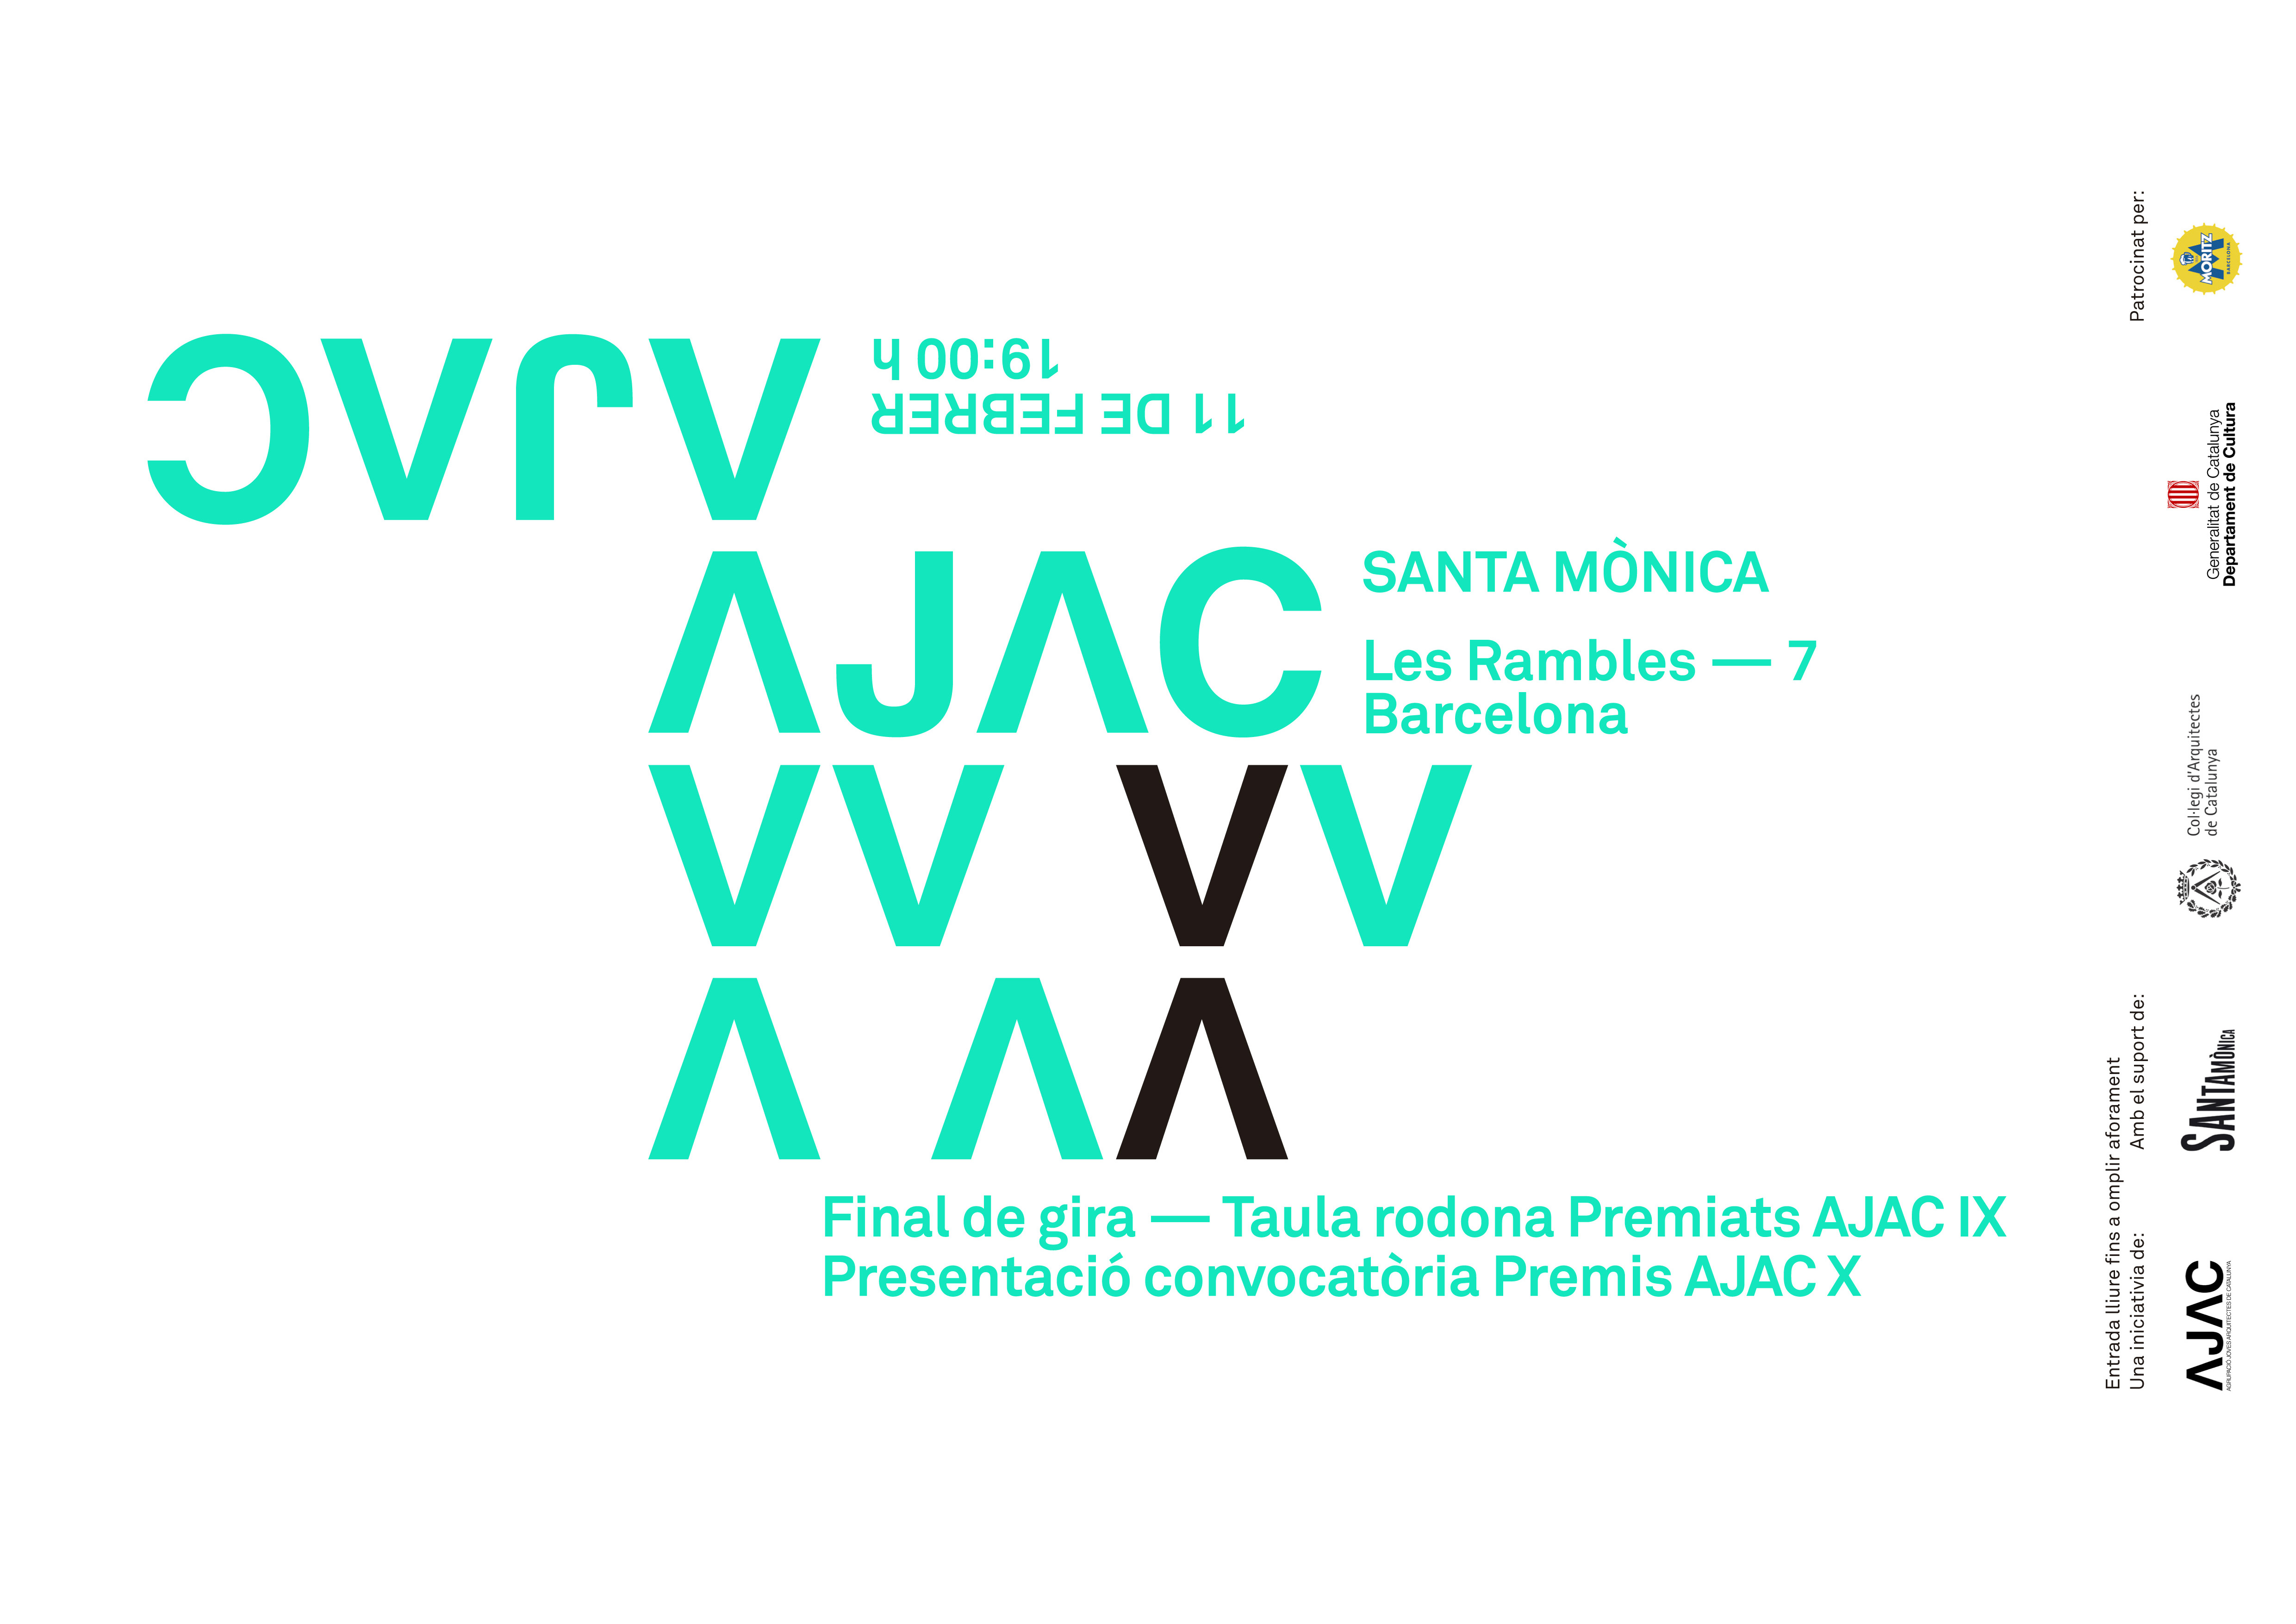 20 anys de Premis AJAC al Centre d'Arts Santa Mònica